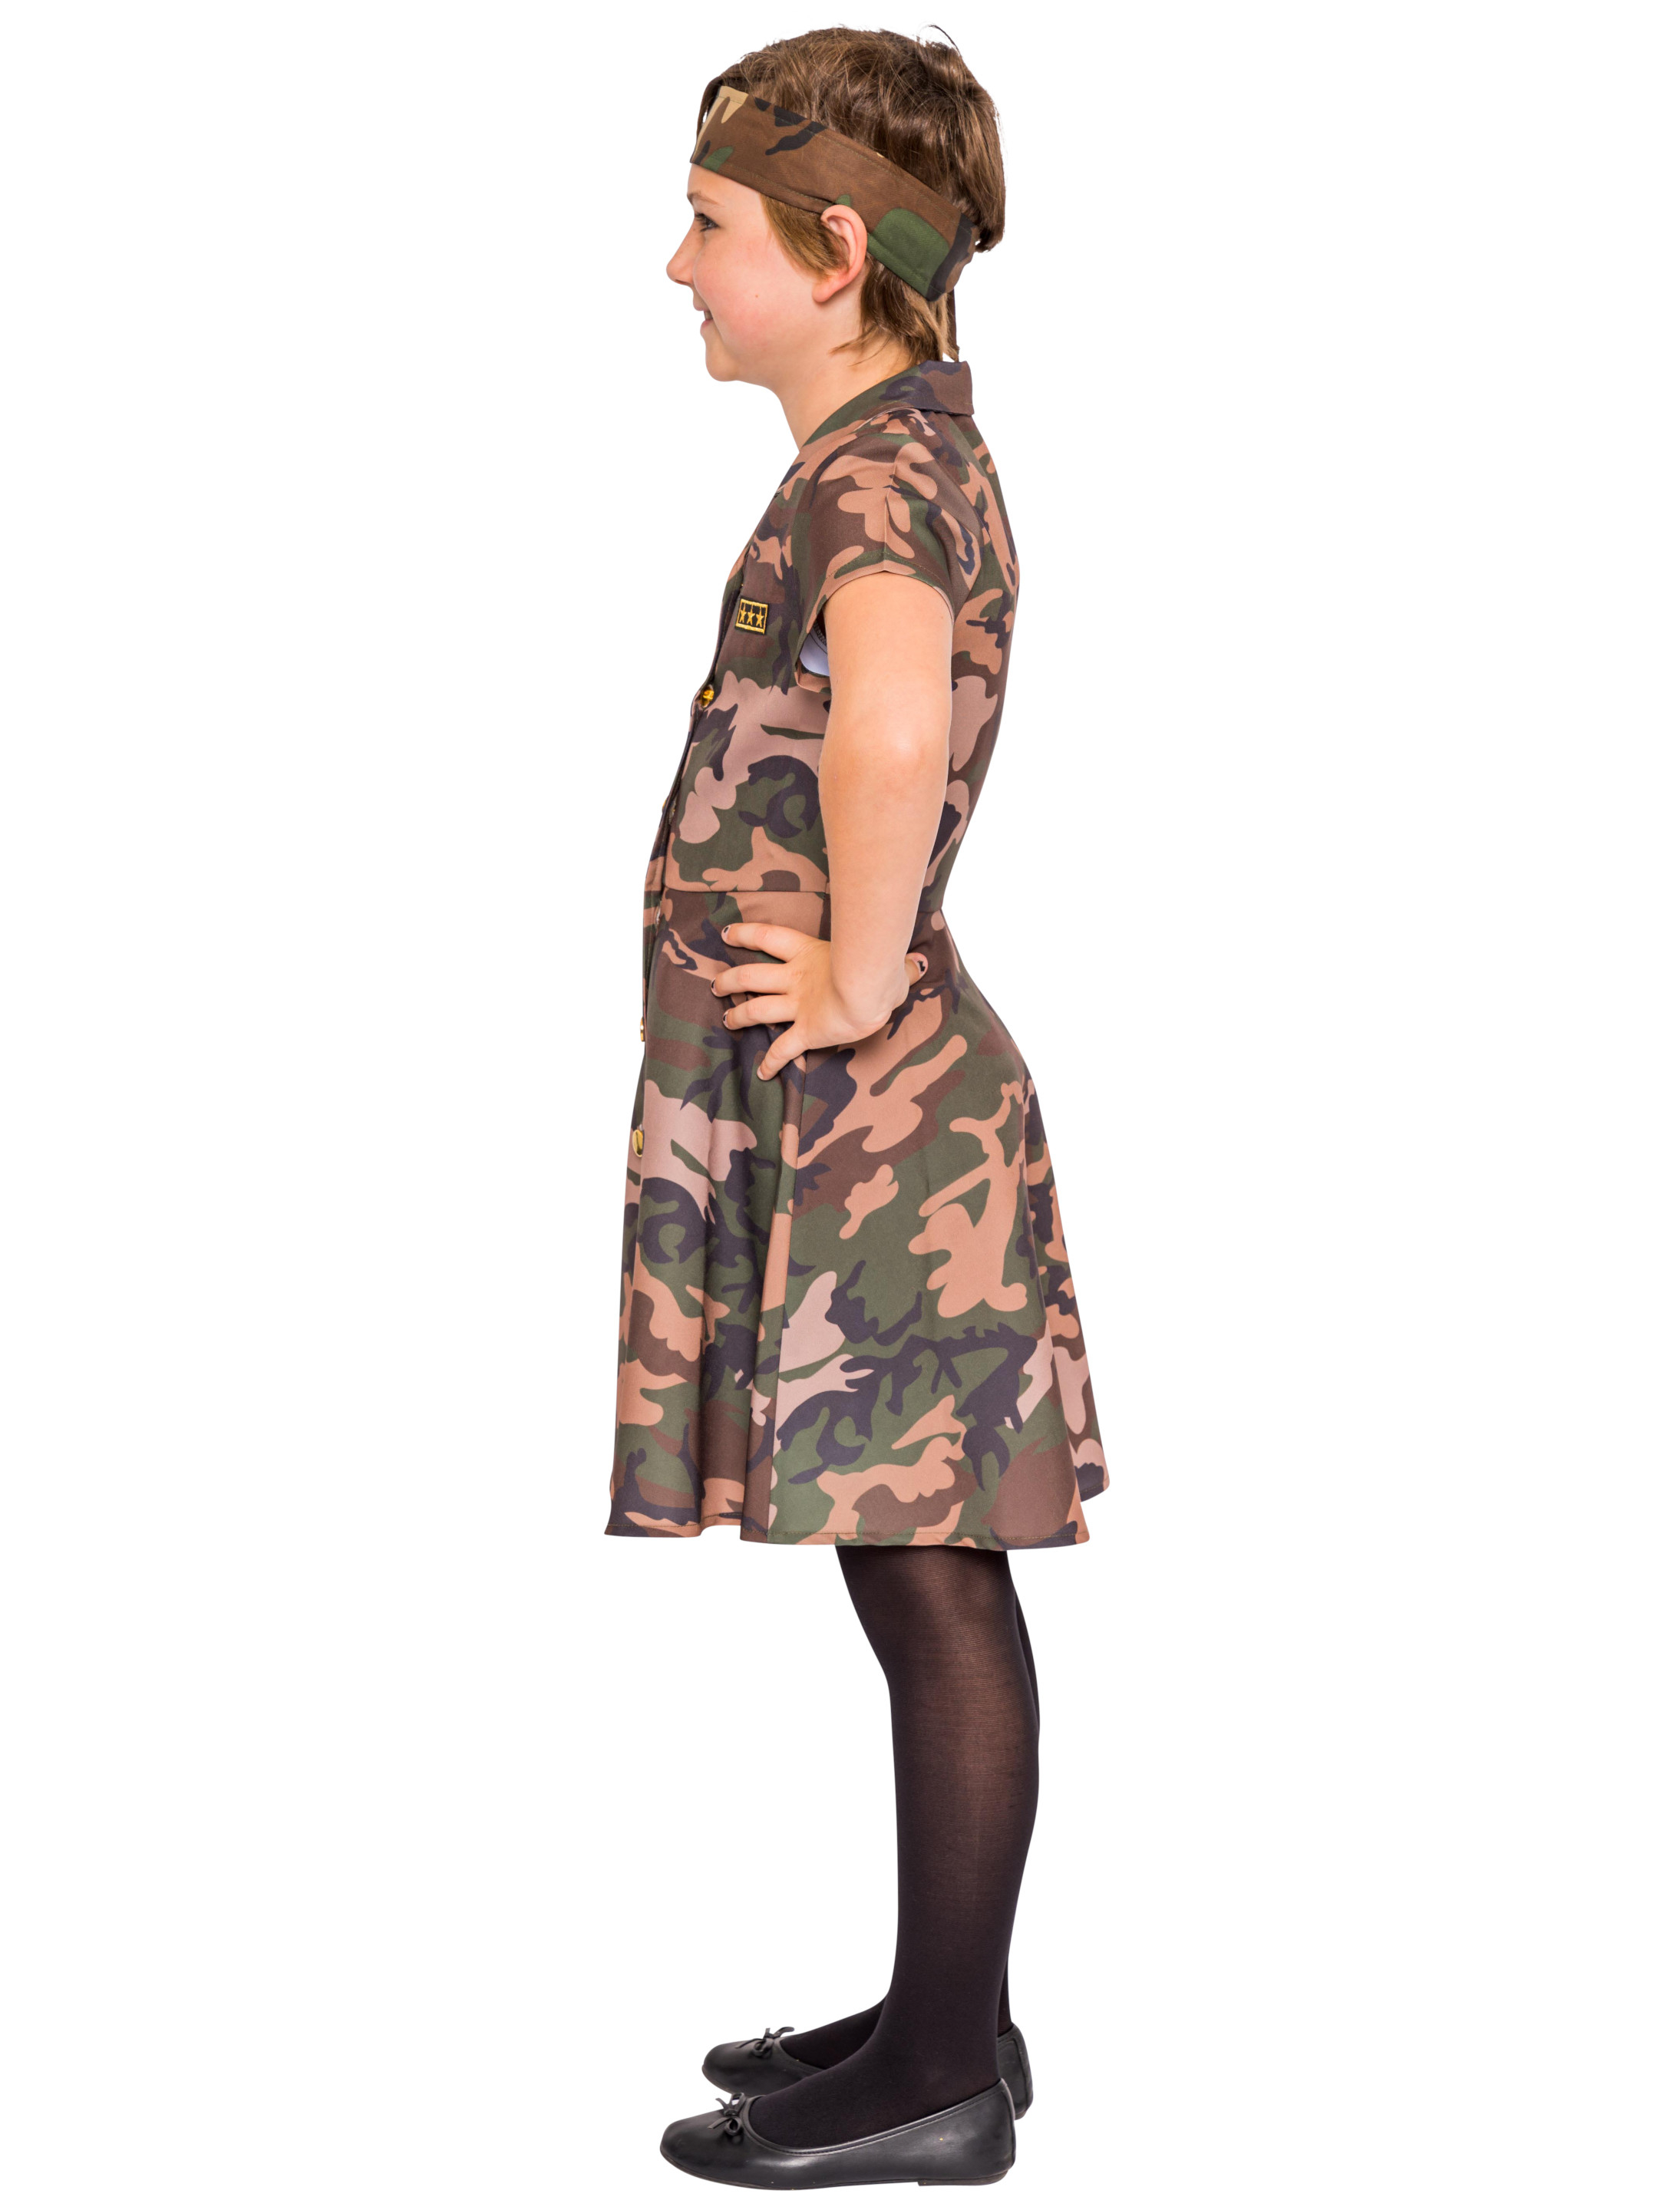 Kleid Kinder Mädchen camouflage 164